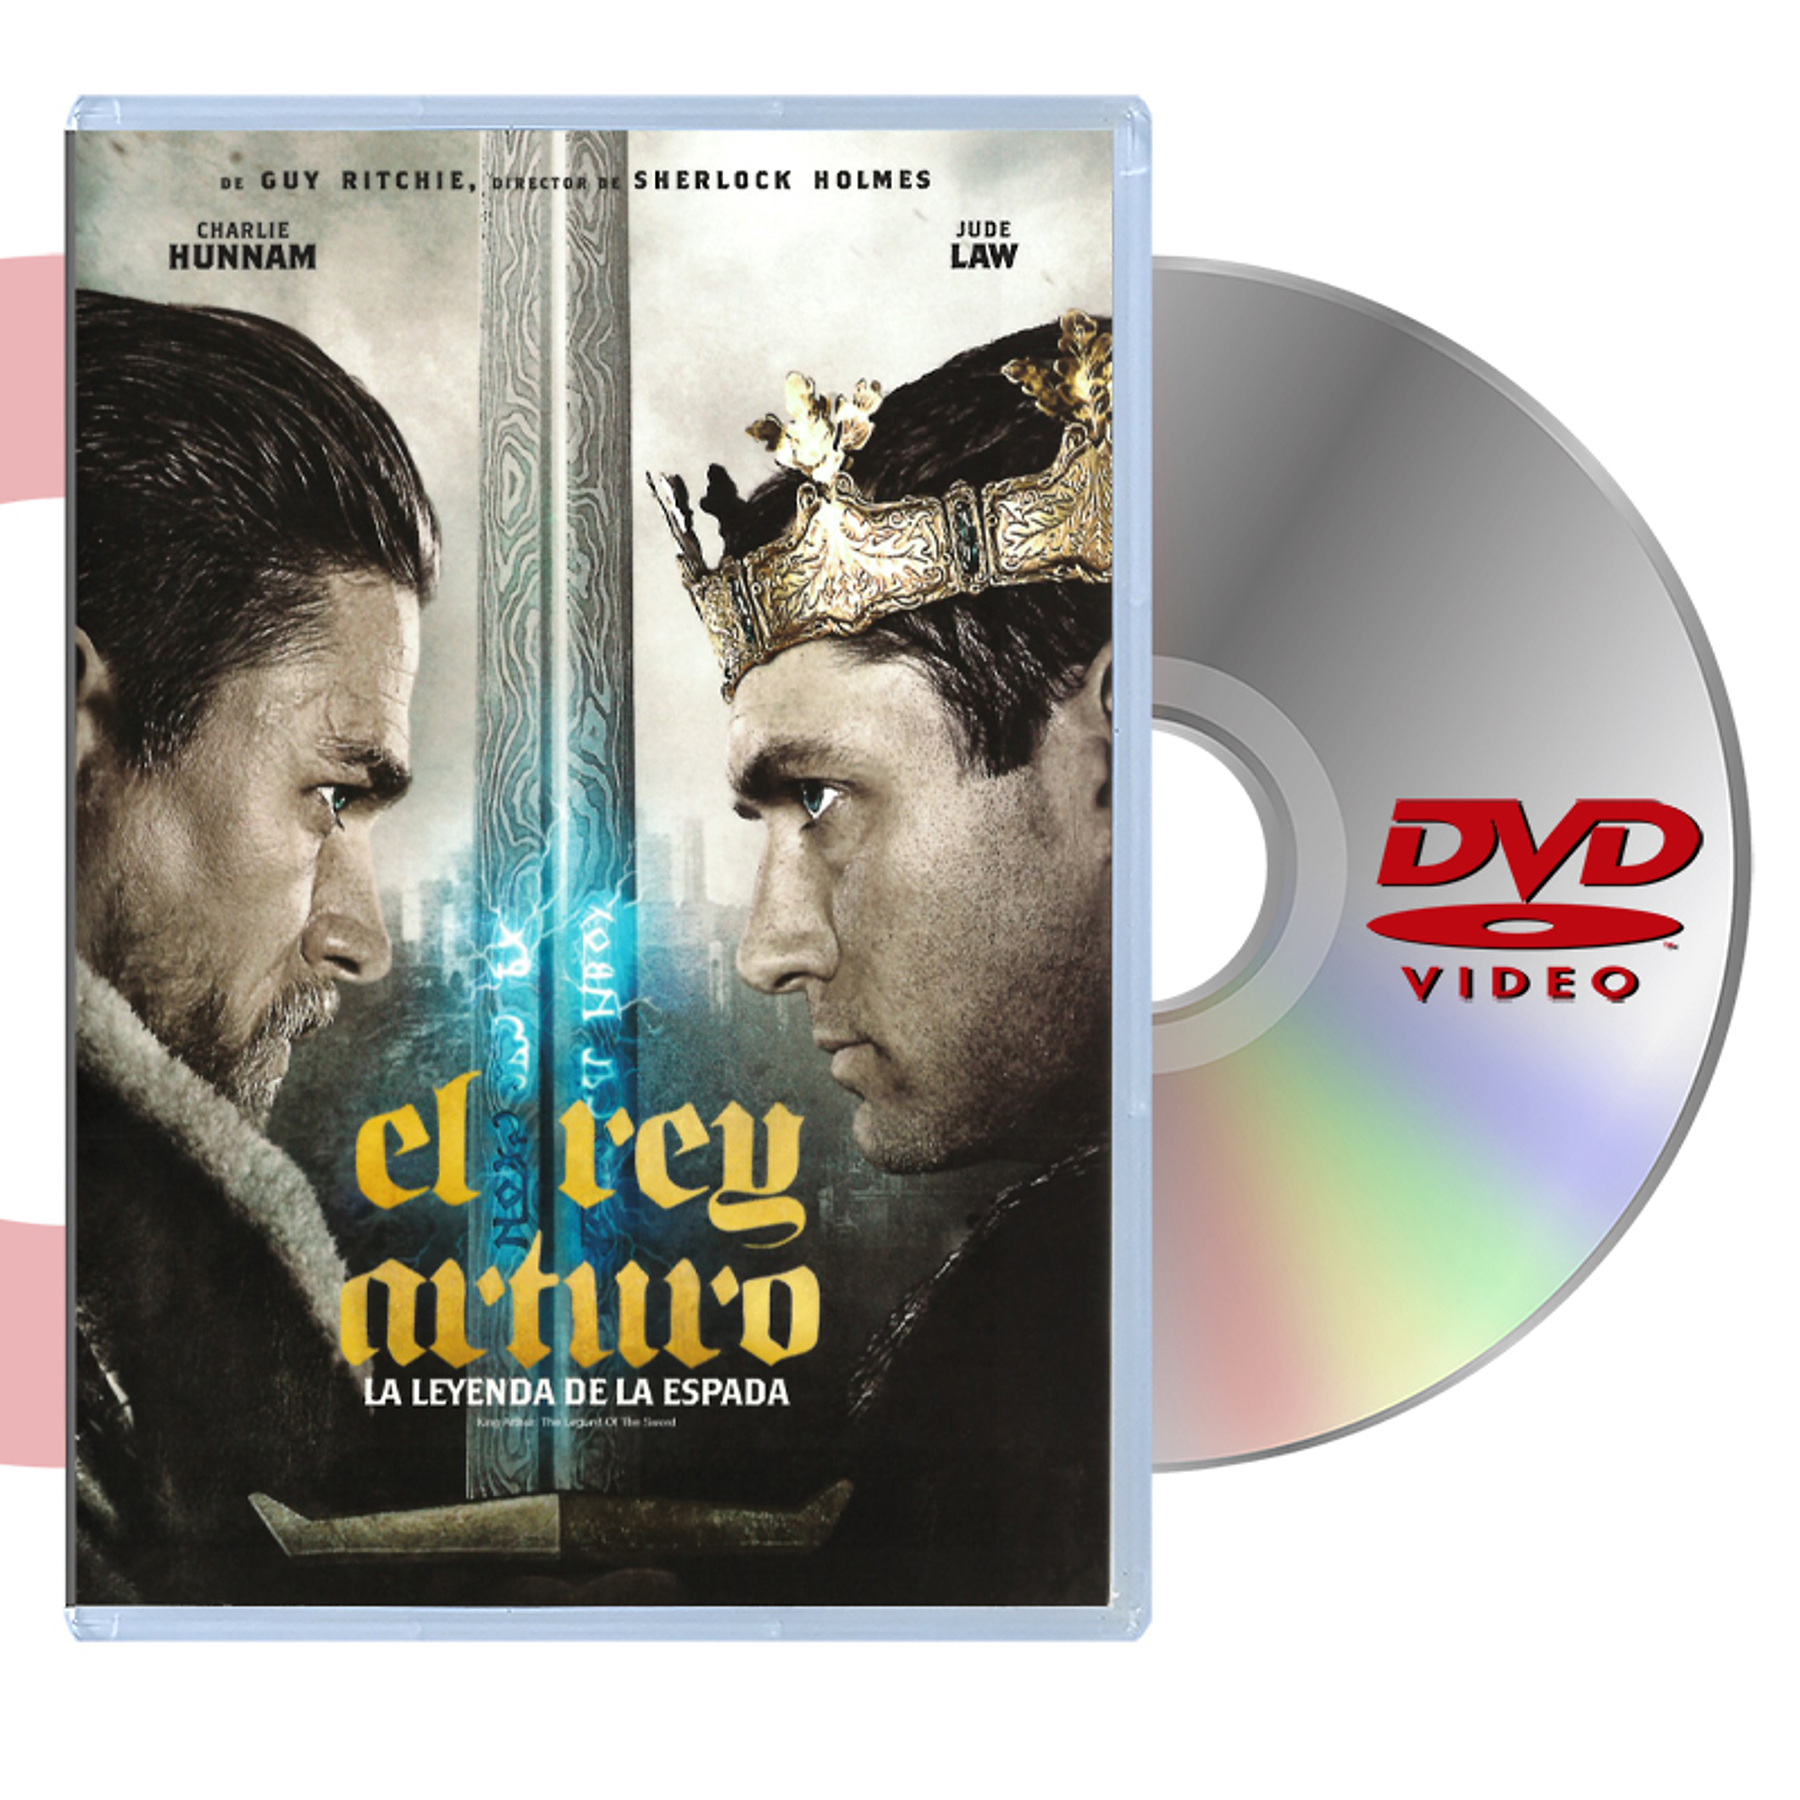 DVD EL REY ARTURO LA LEYENDA DE LA ESPADA